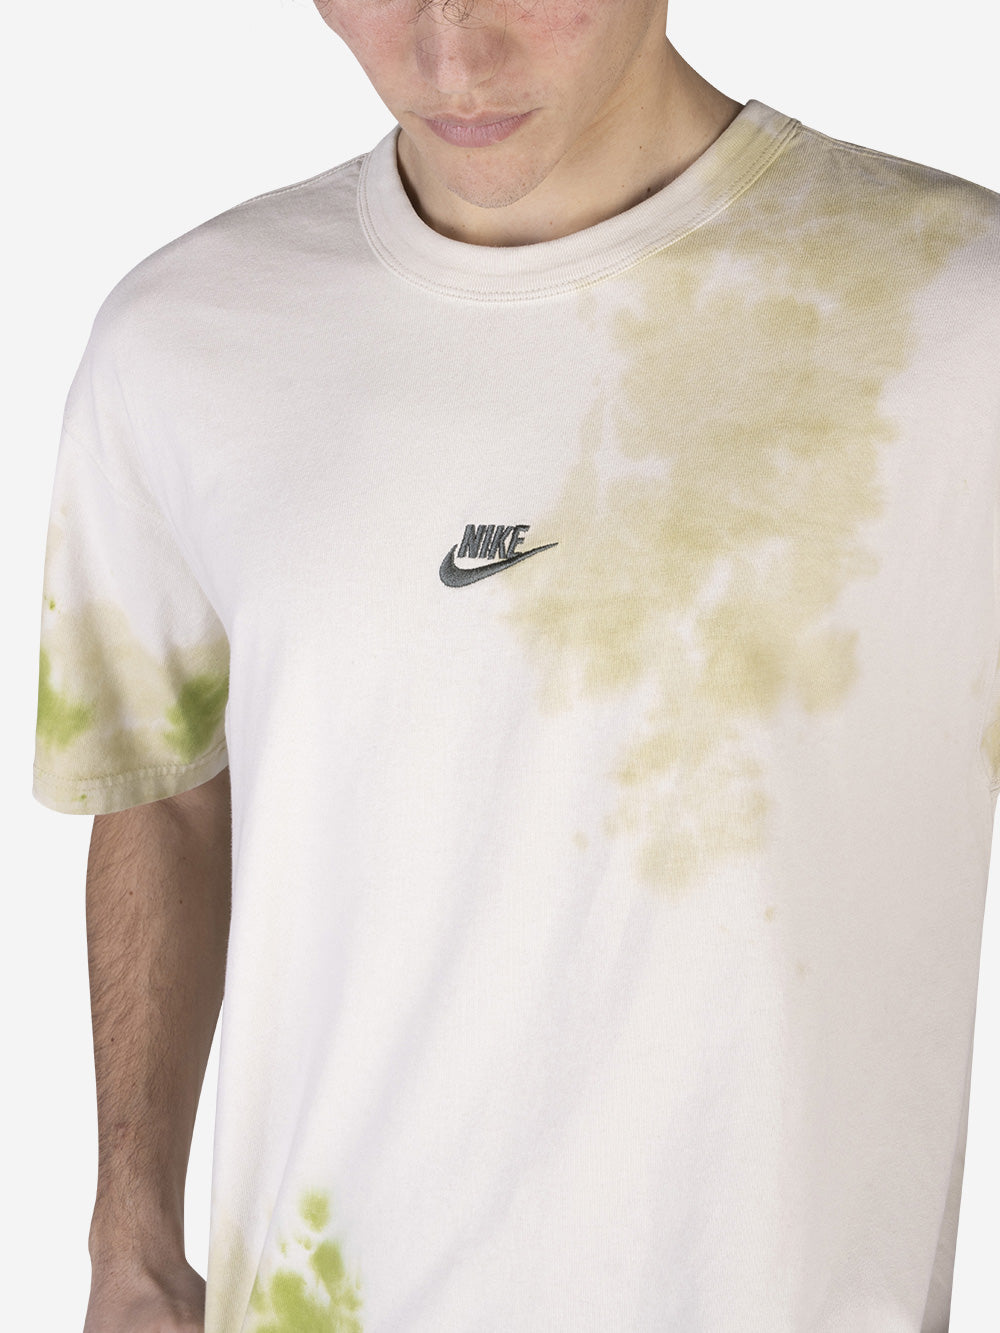 NIKE T-shirt Premium Essentials Tie-Dye Verde Urbanstaroma